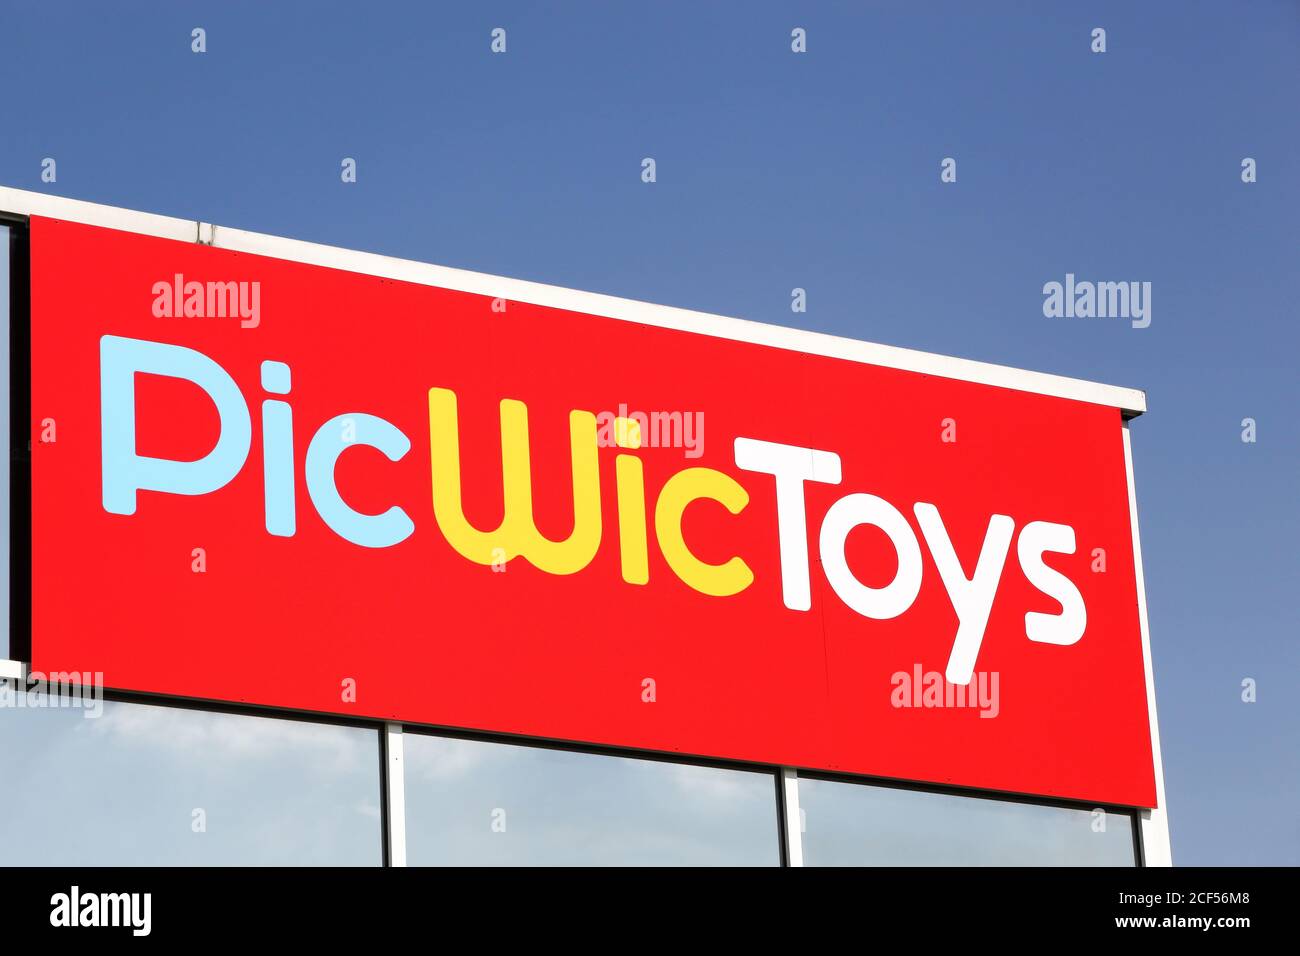 Saint Priest, France - 16 mai 2020 : logo Picwictoys sur un mur. PicWicToys  est une chaîne de magasins de jouets, lancée en 1977 à Englos, en France  Photo Stock - Alamy